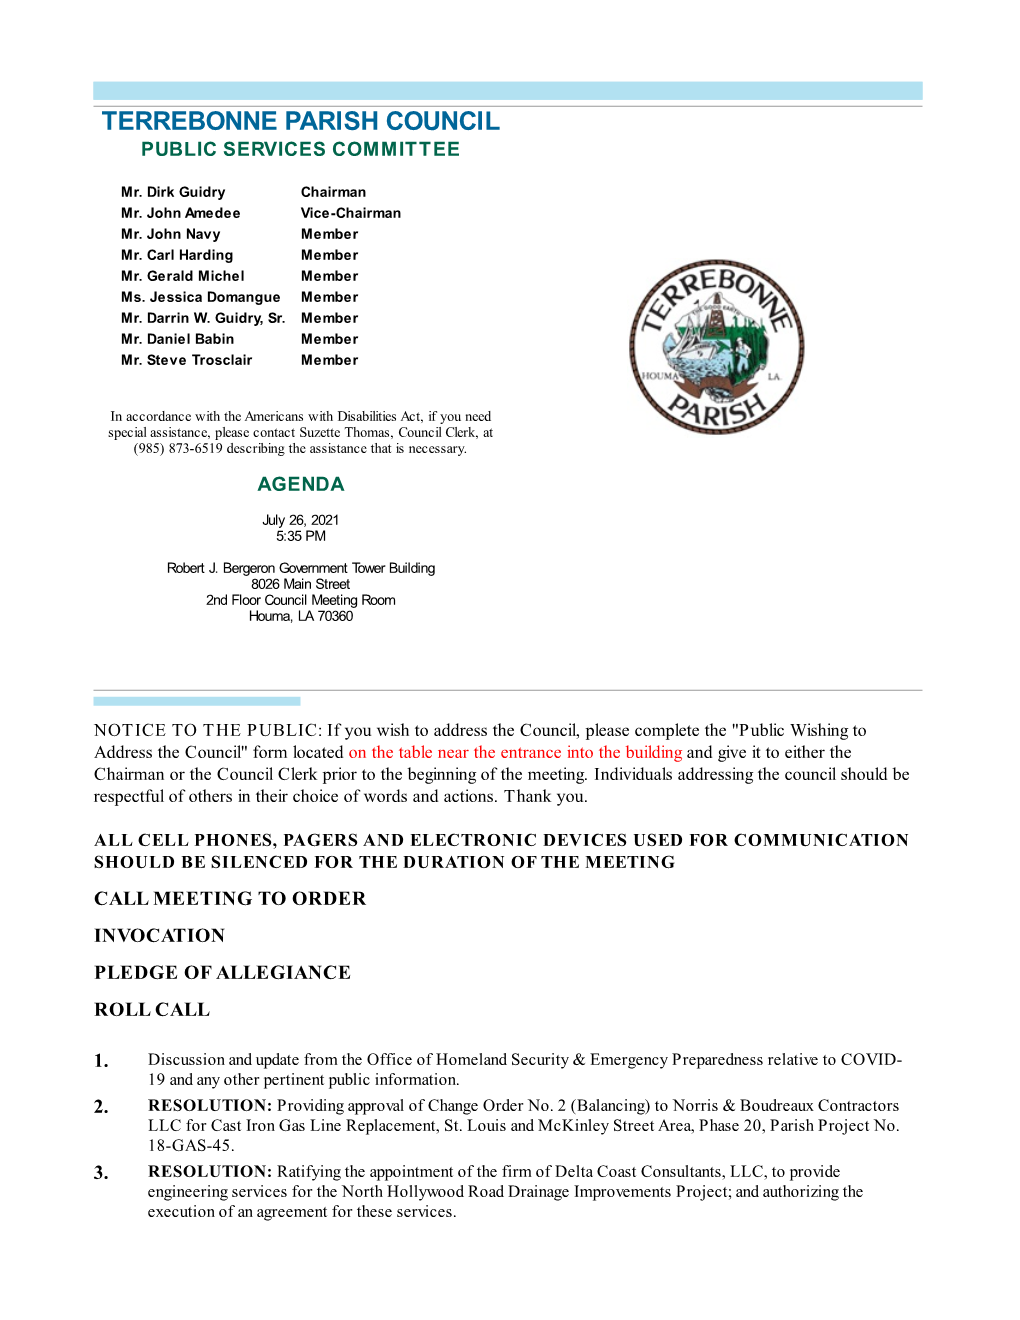 Terrebonne Parish Council Public Services Committee